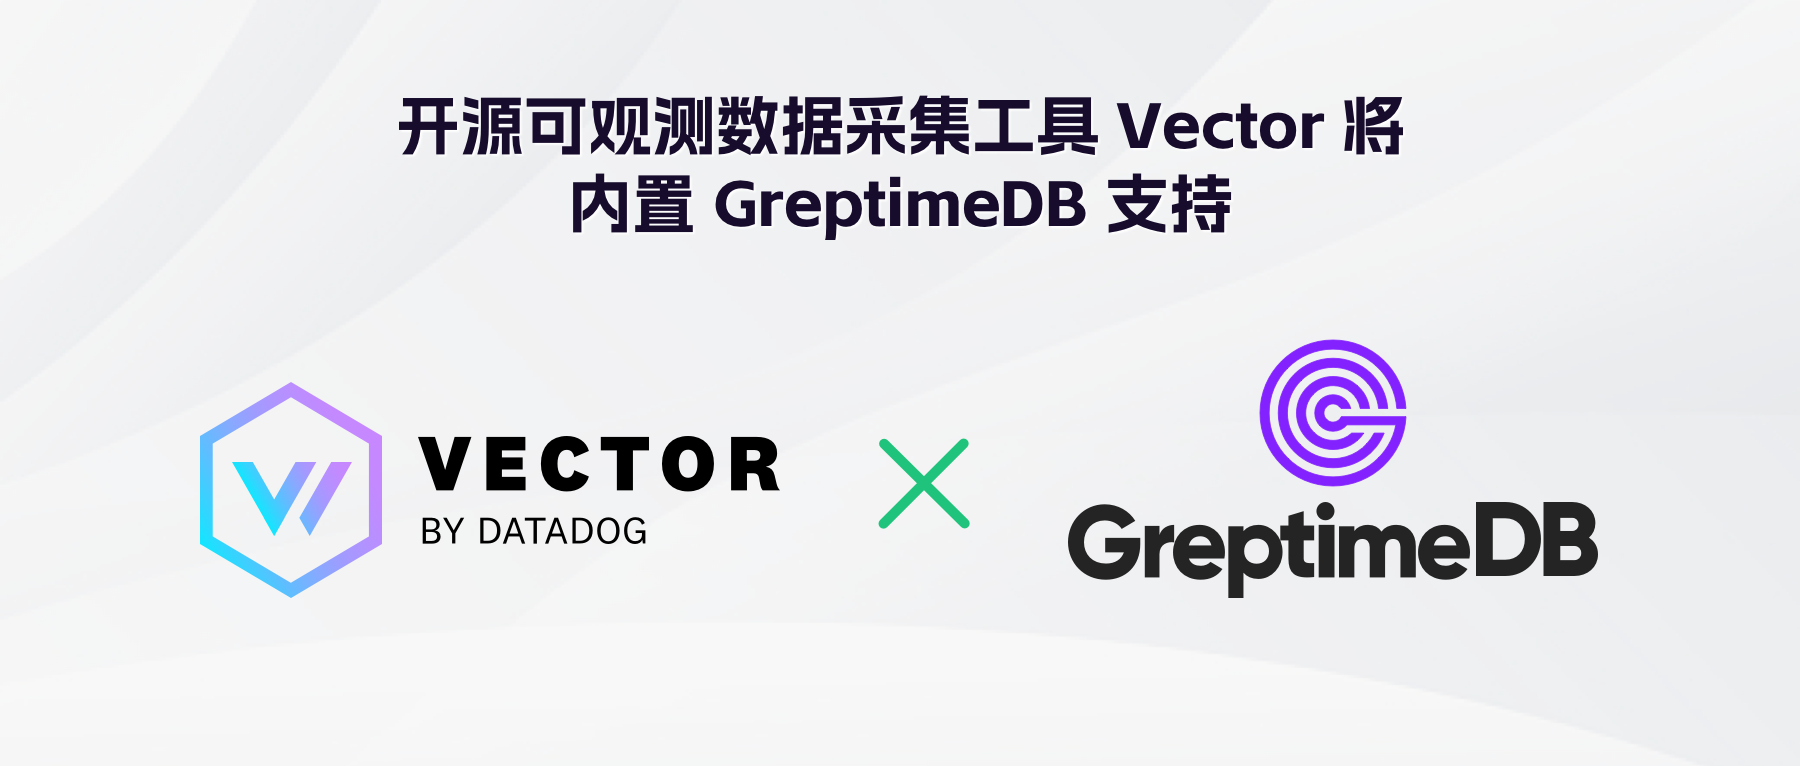 开源可观测数据采集工具 Vector 已内置 GreptimeDB 支持